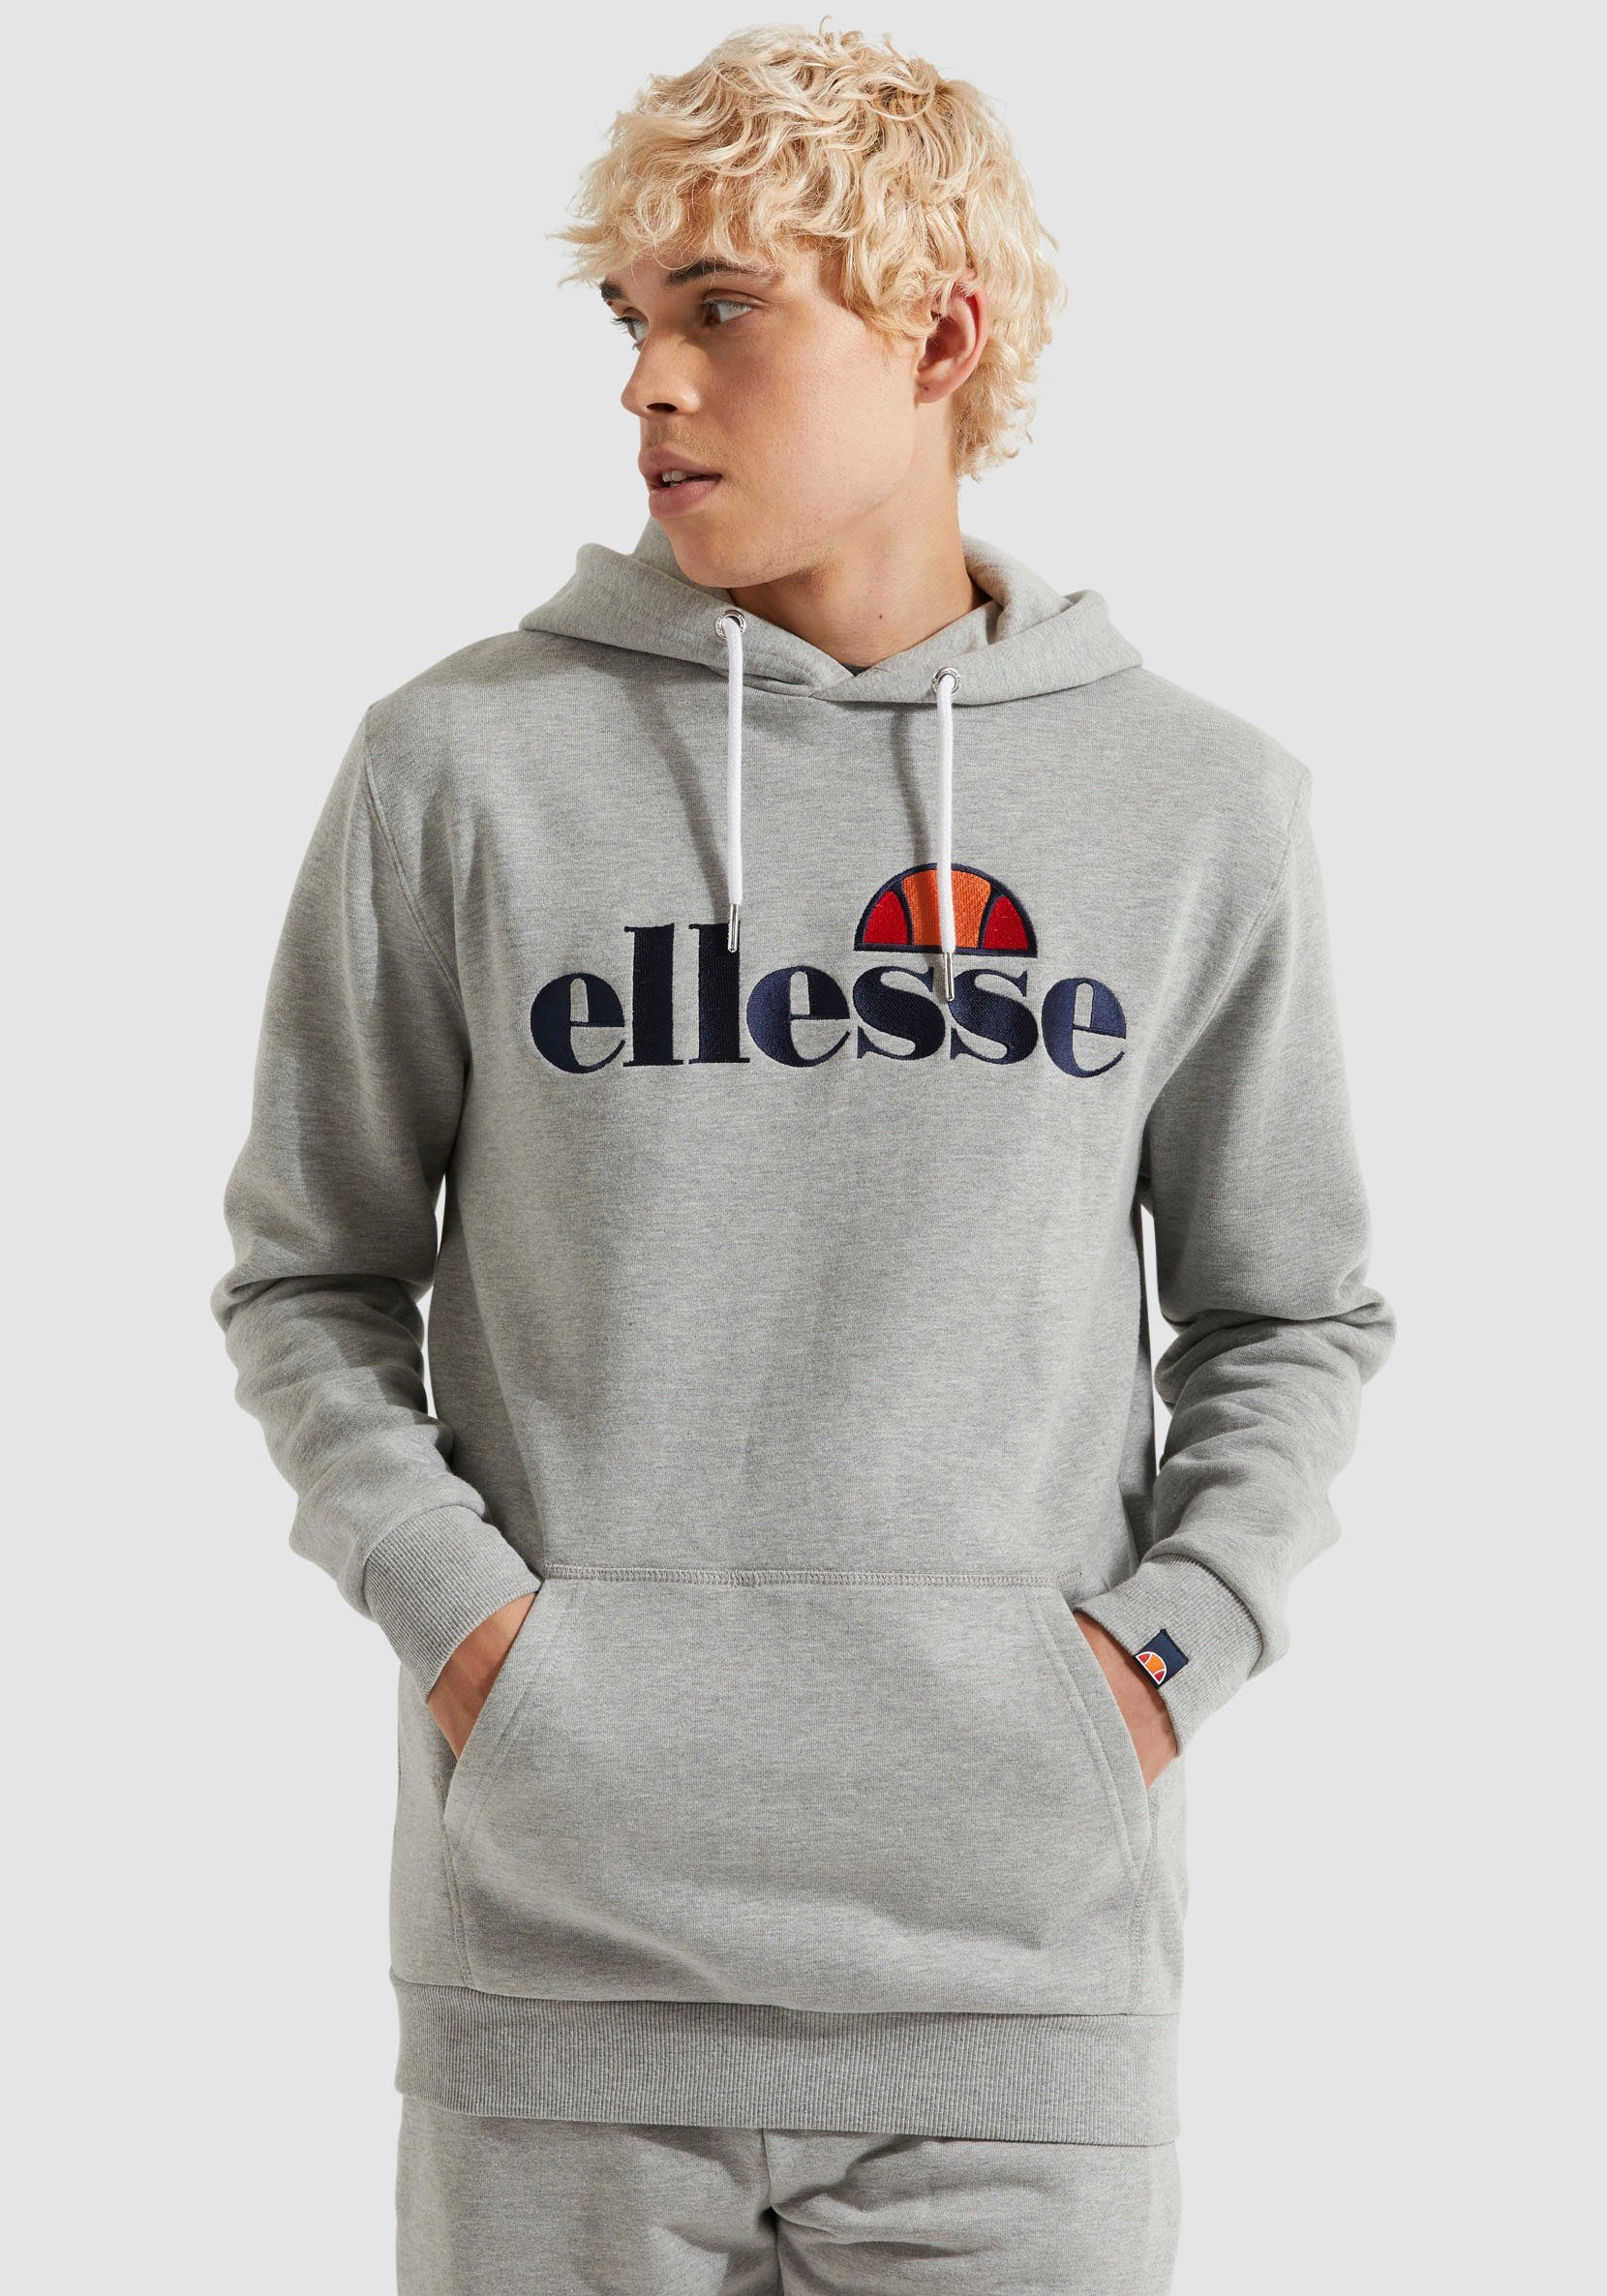 Ellesse Hoodie Ferrer Hoody grey | Sweatshirts